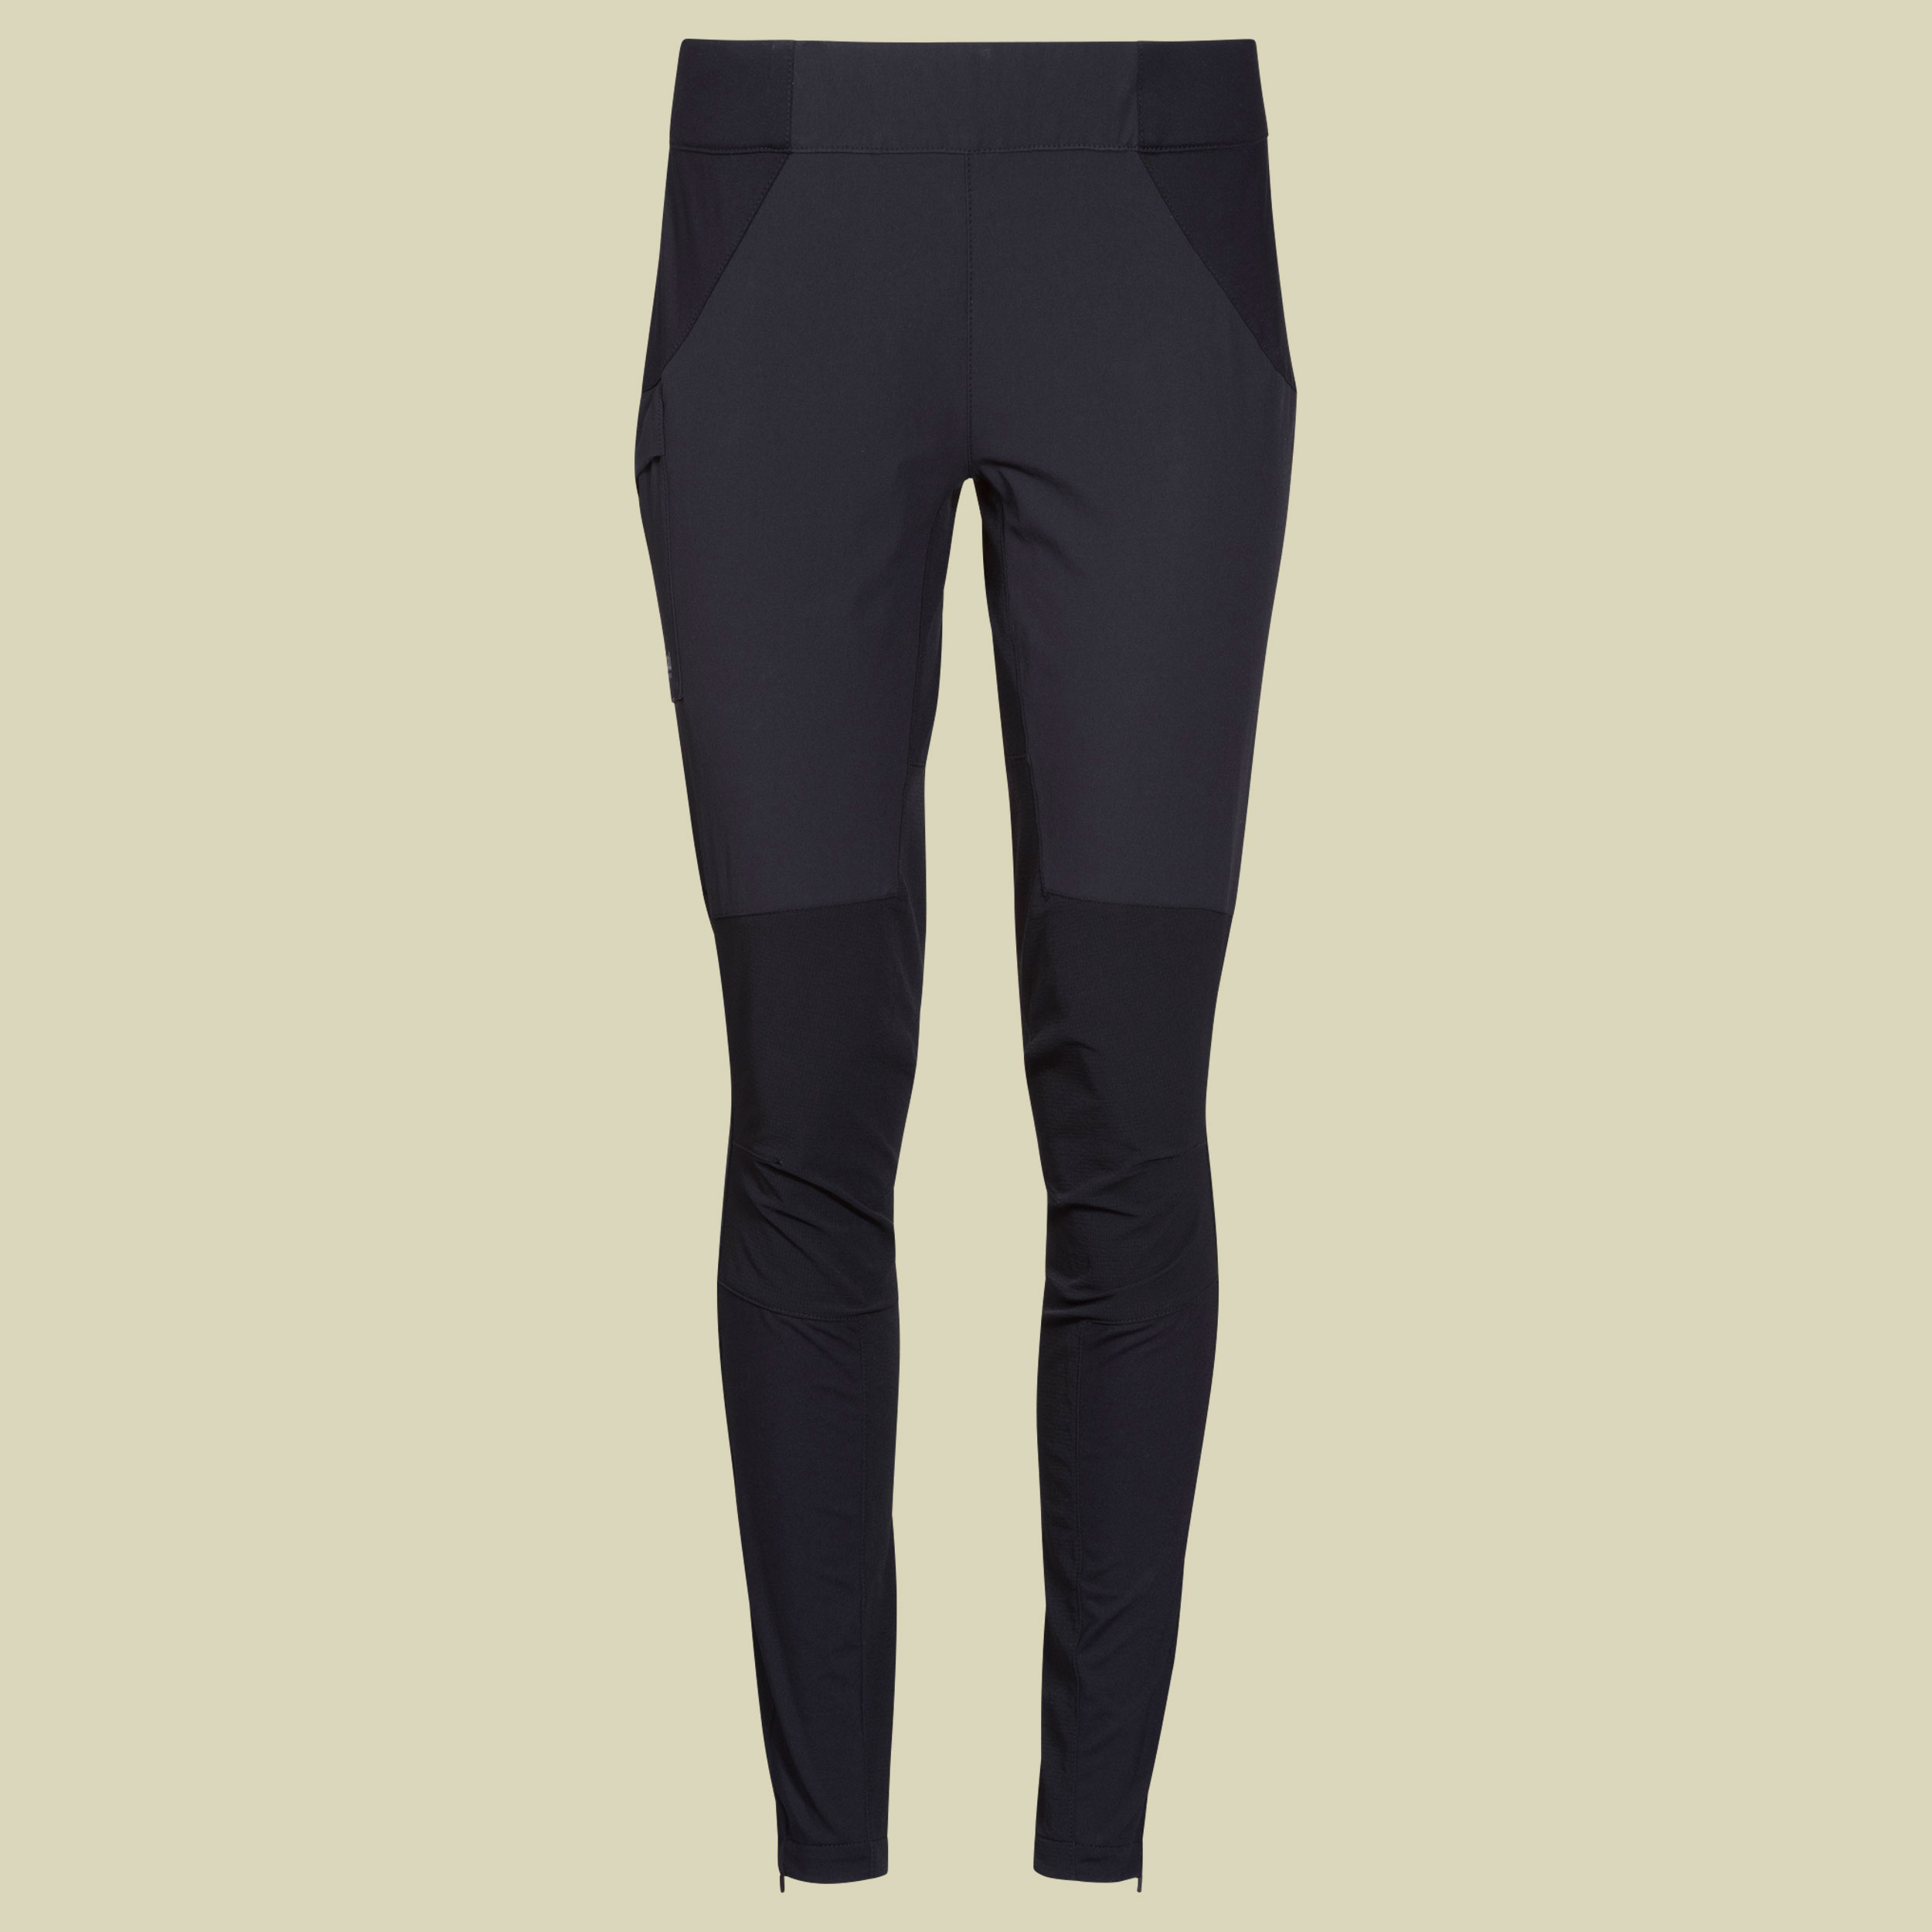 Floyen Pants Women Größe XL Farbe black/solid charcoal